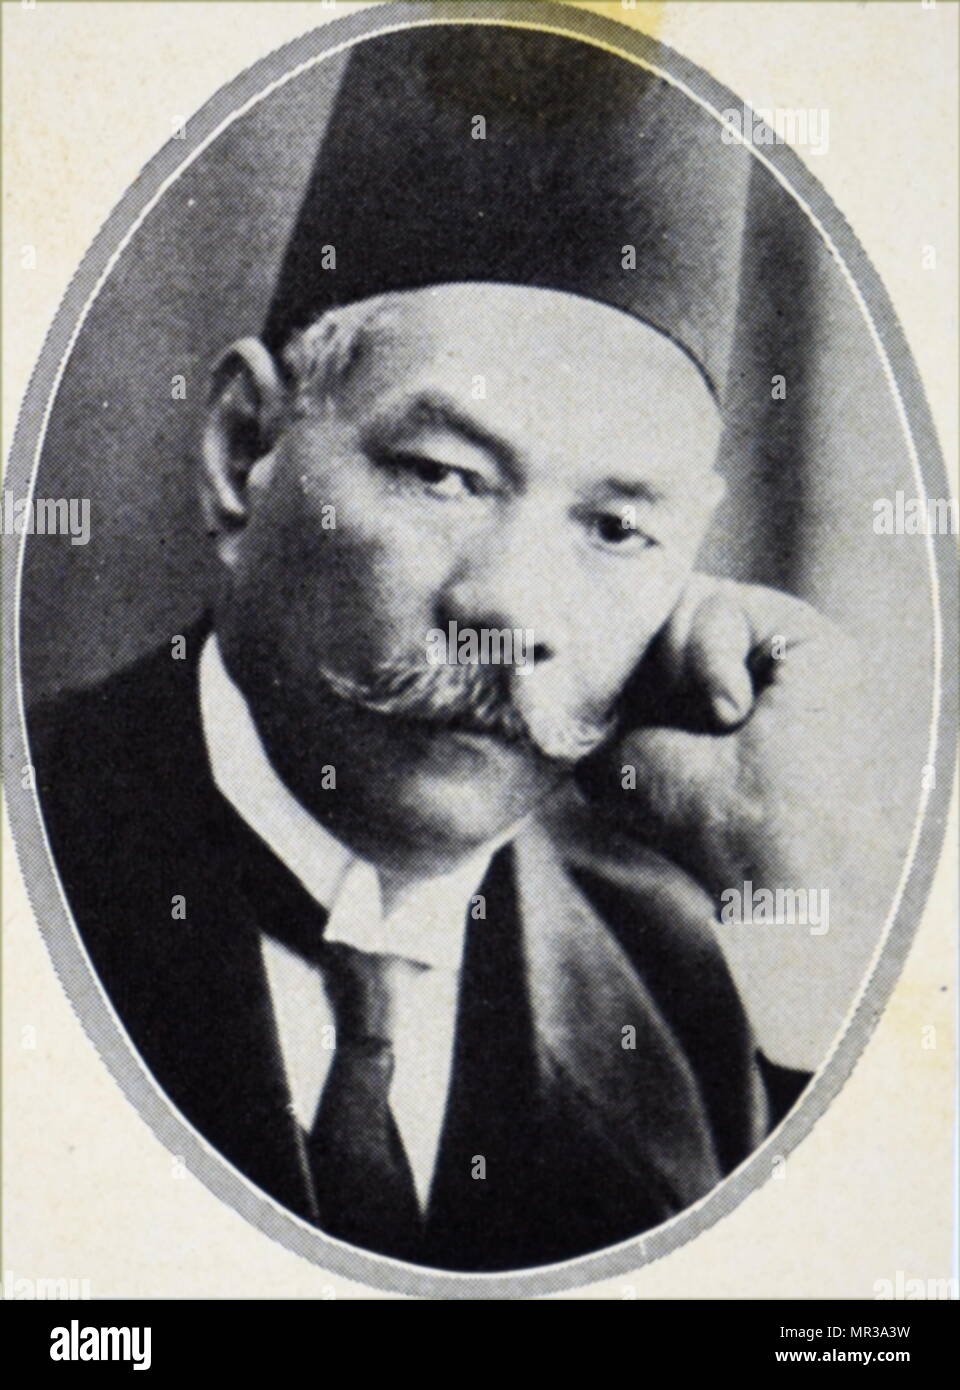 Ritratto fotografico di Saad Zaghloul (1859-1927) un Egiziano rivoluzionario e statista, leader dell'Egitto nazionalista del partito Wafd e primo ministro egiziano. In data xx secolo Foto Stock